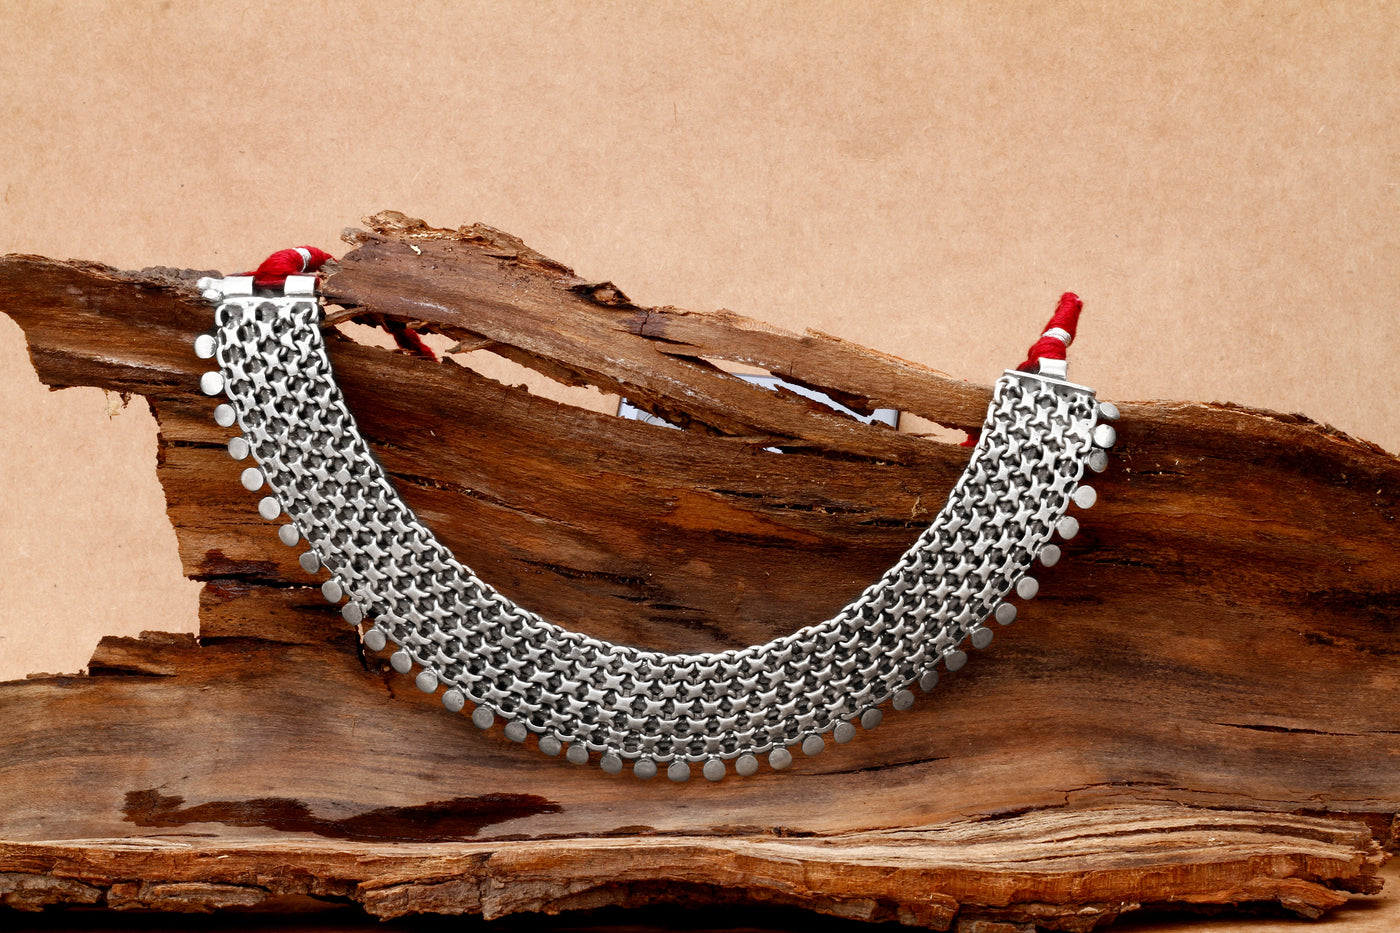 Sanjana Sanghi in Silver Necklace-Earrings-Sangeeta Boochra